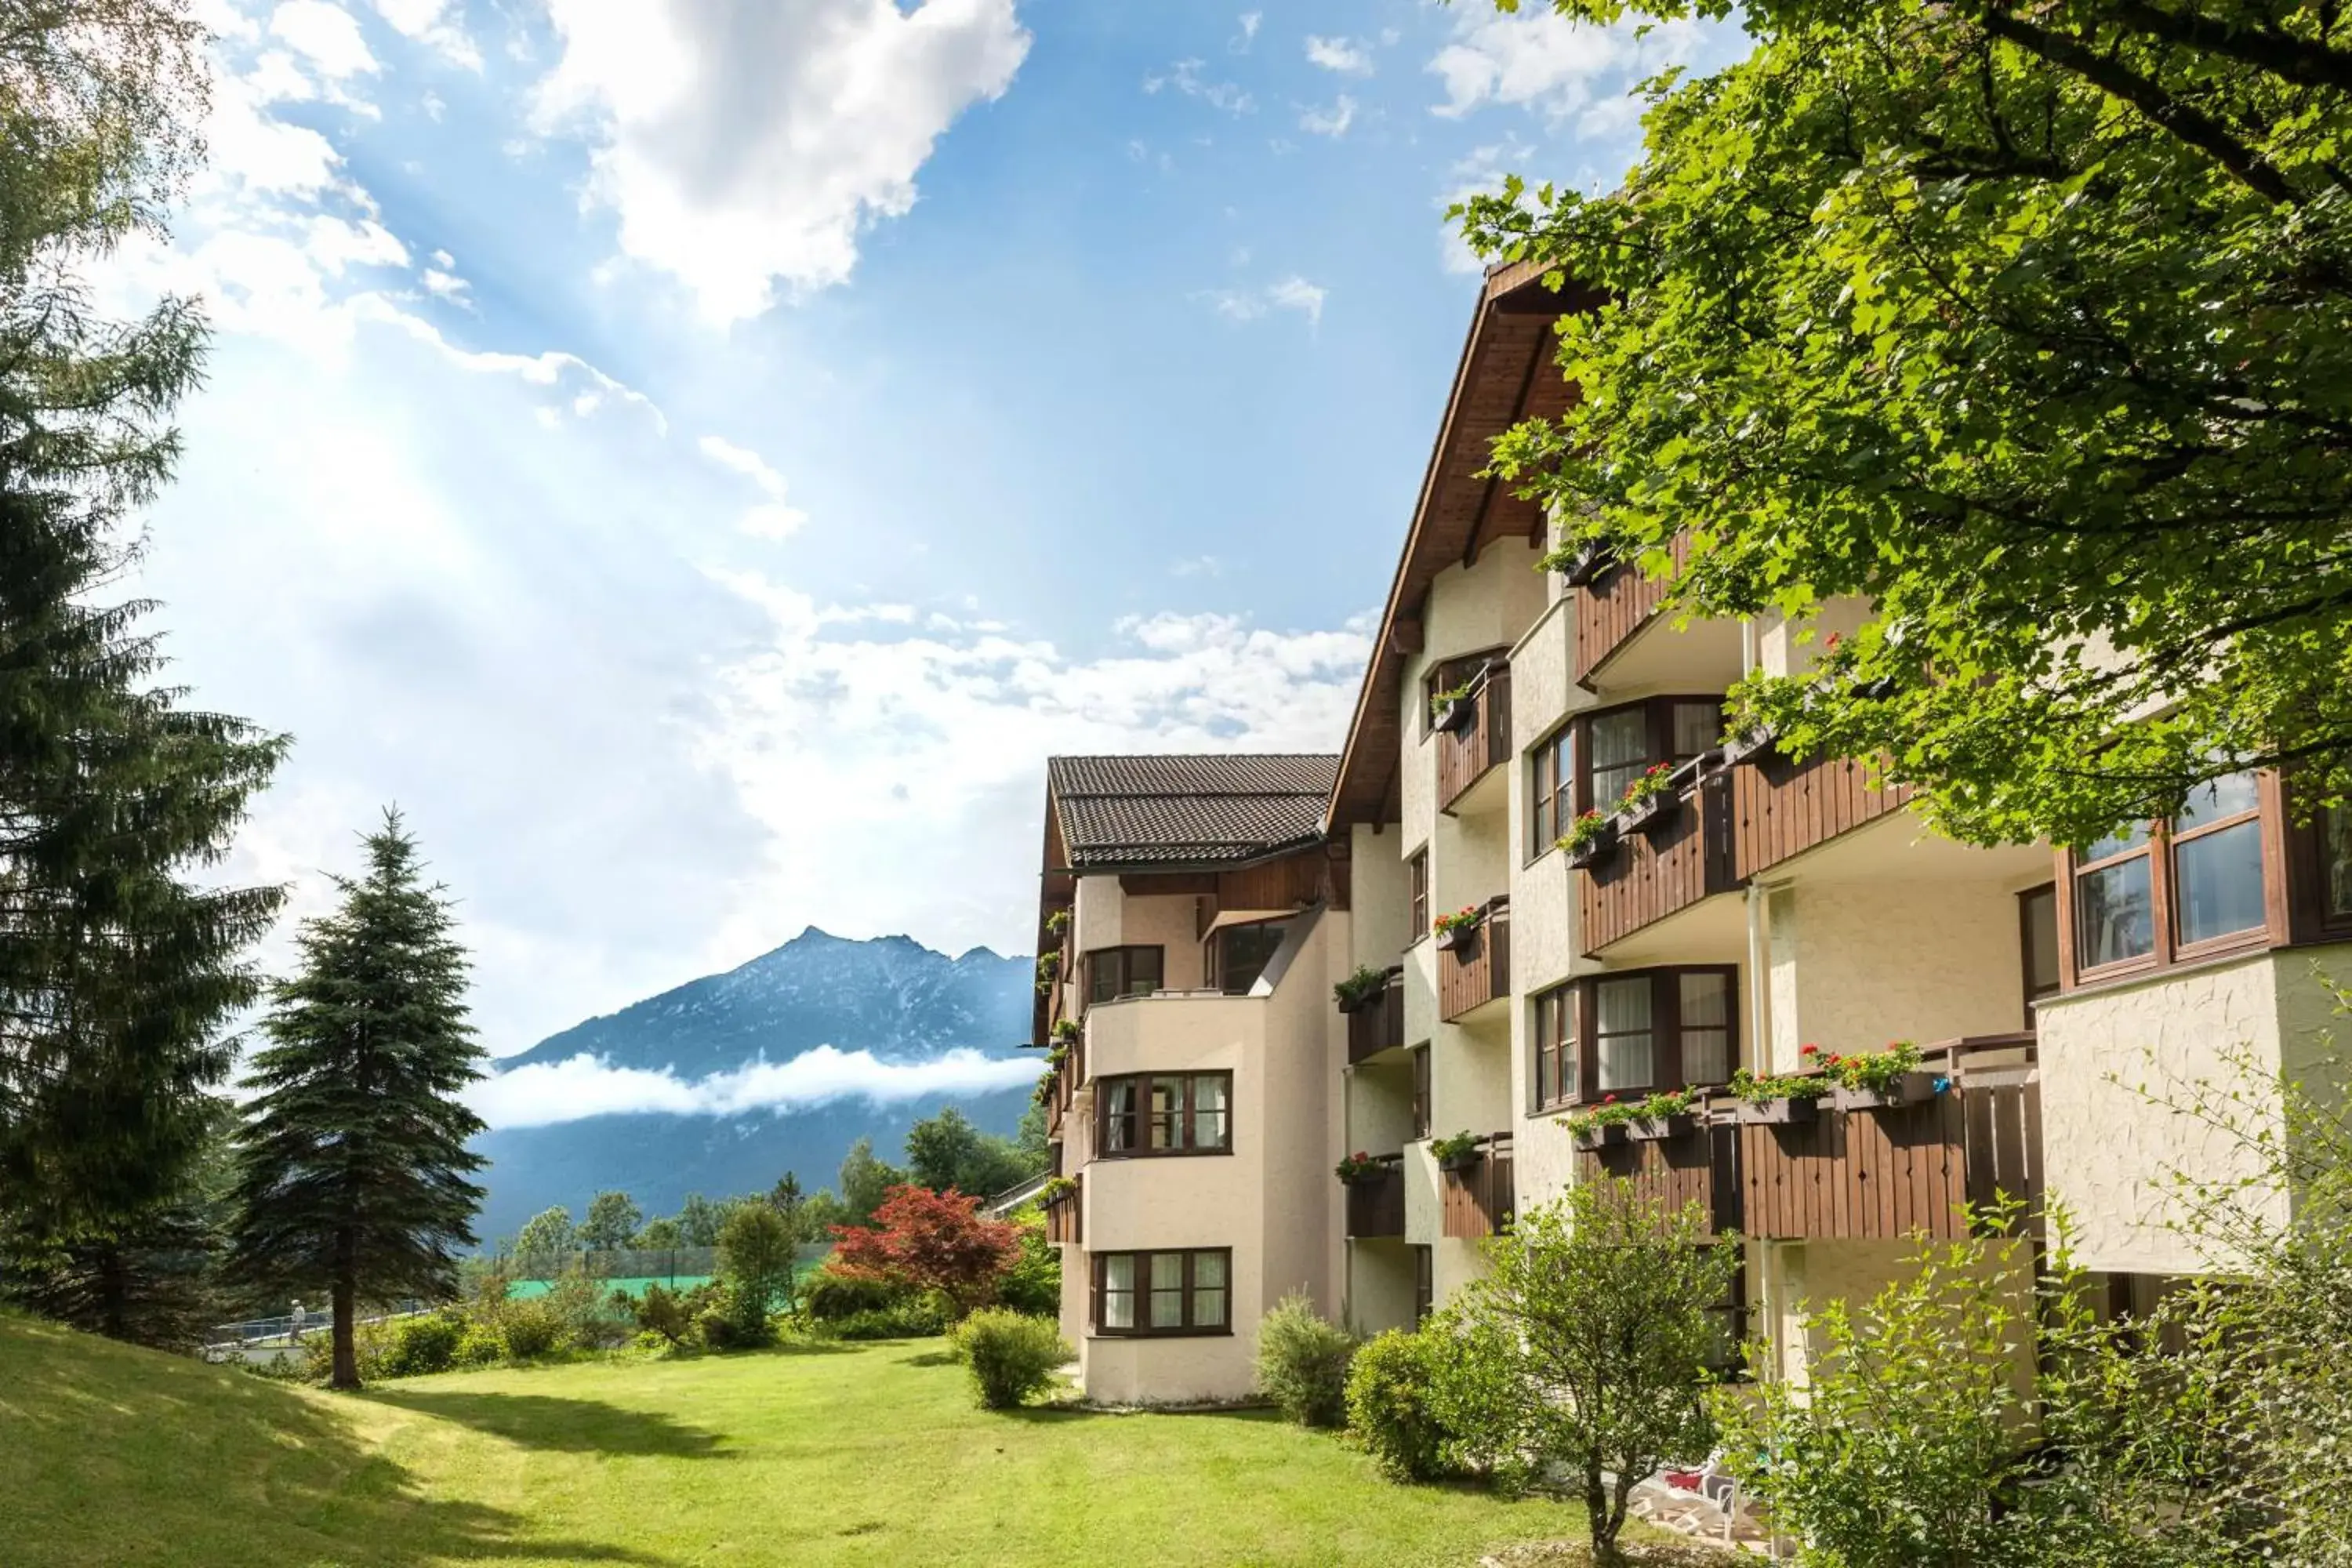 Property Building in Dorint Sporthotel Garmisch-Partenkirchen